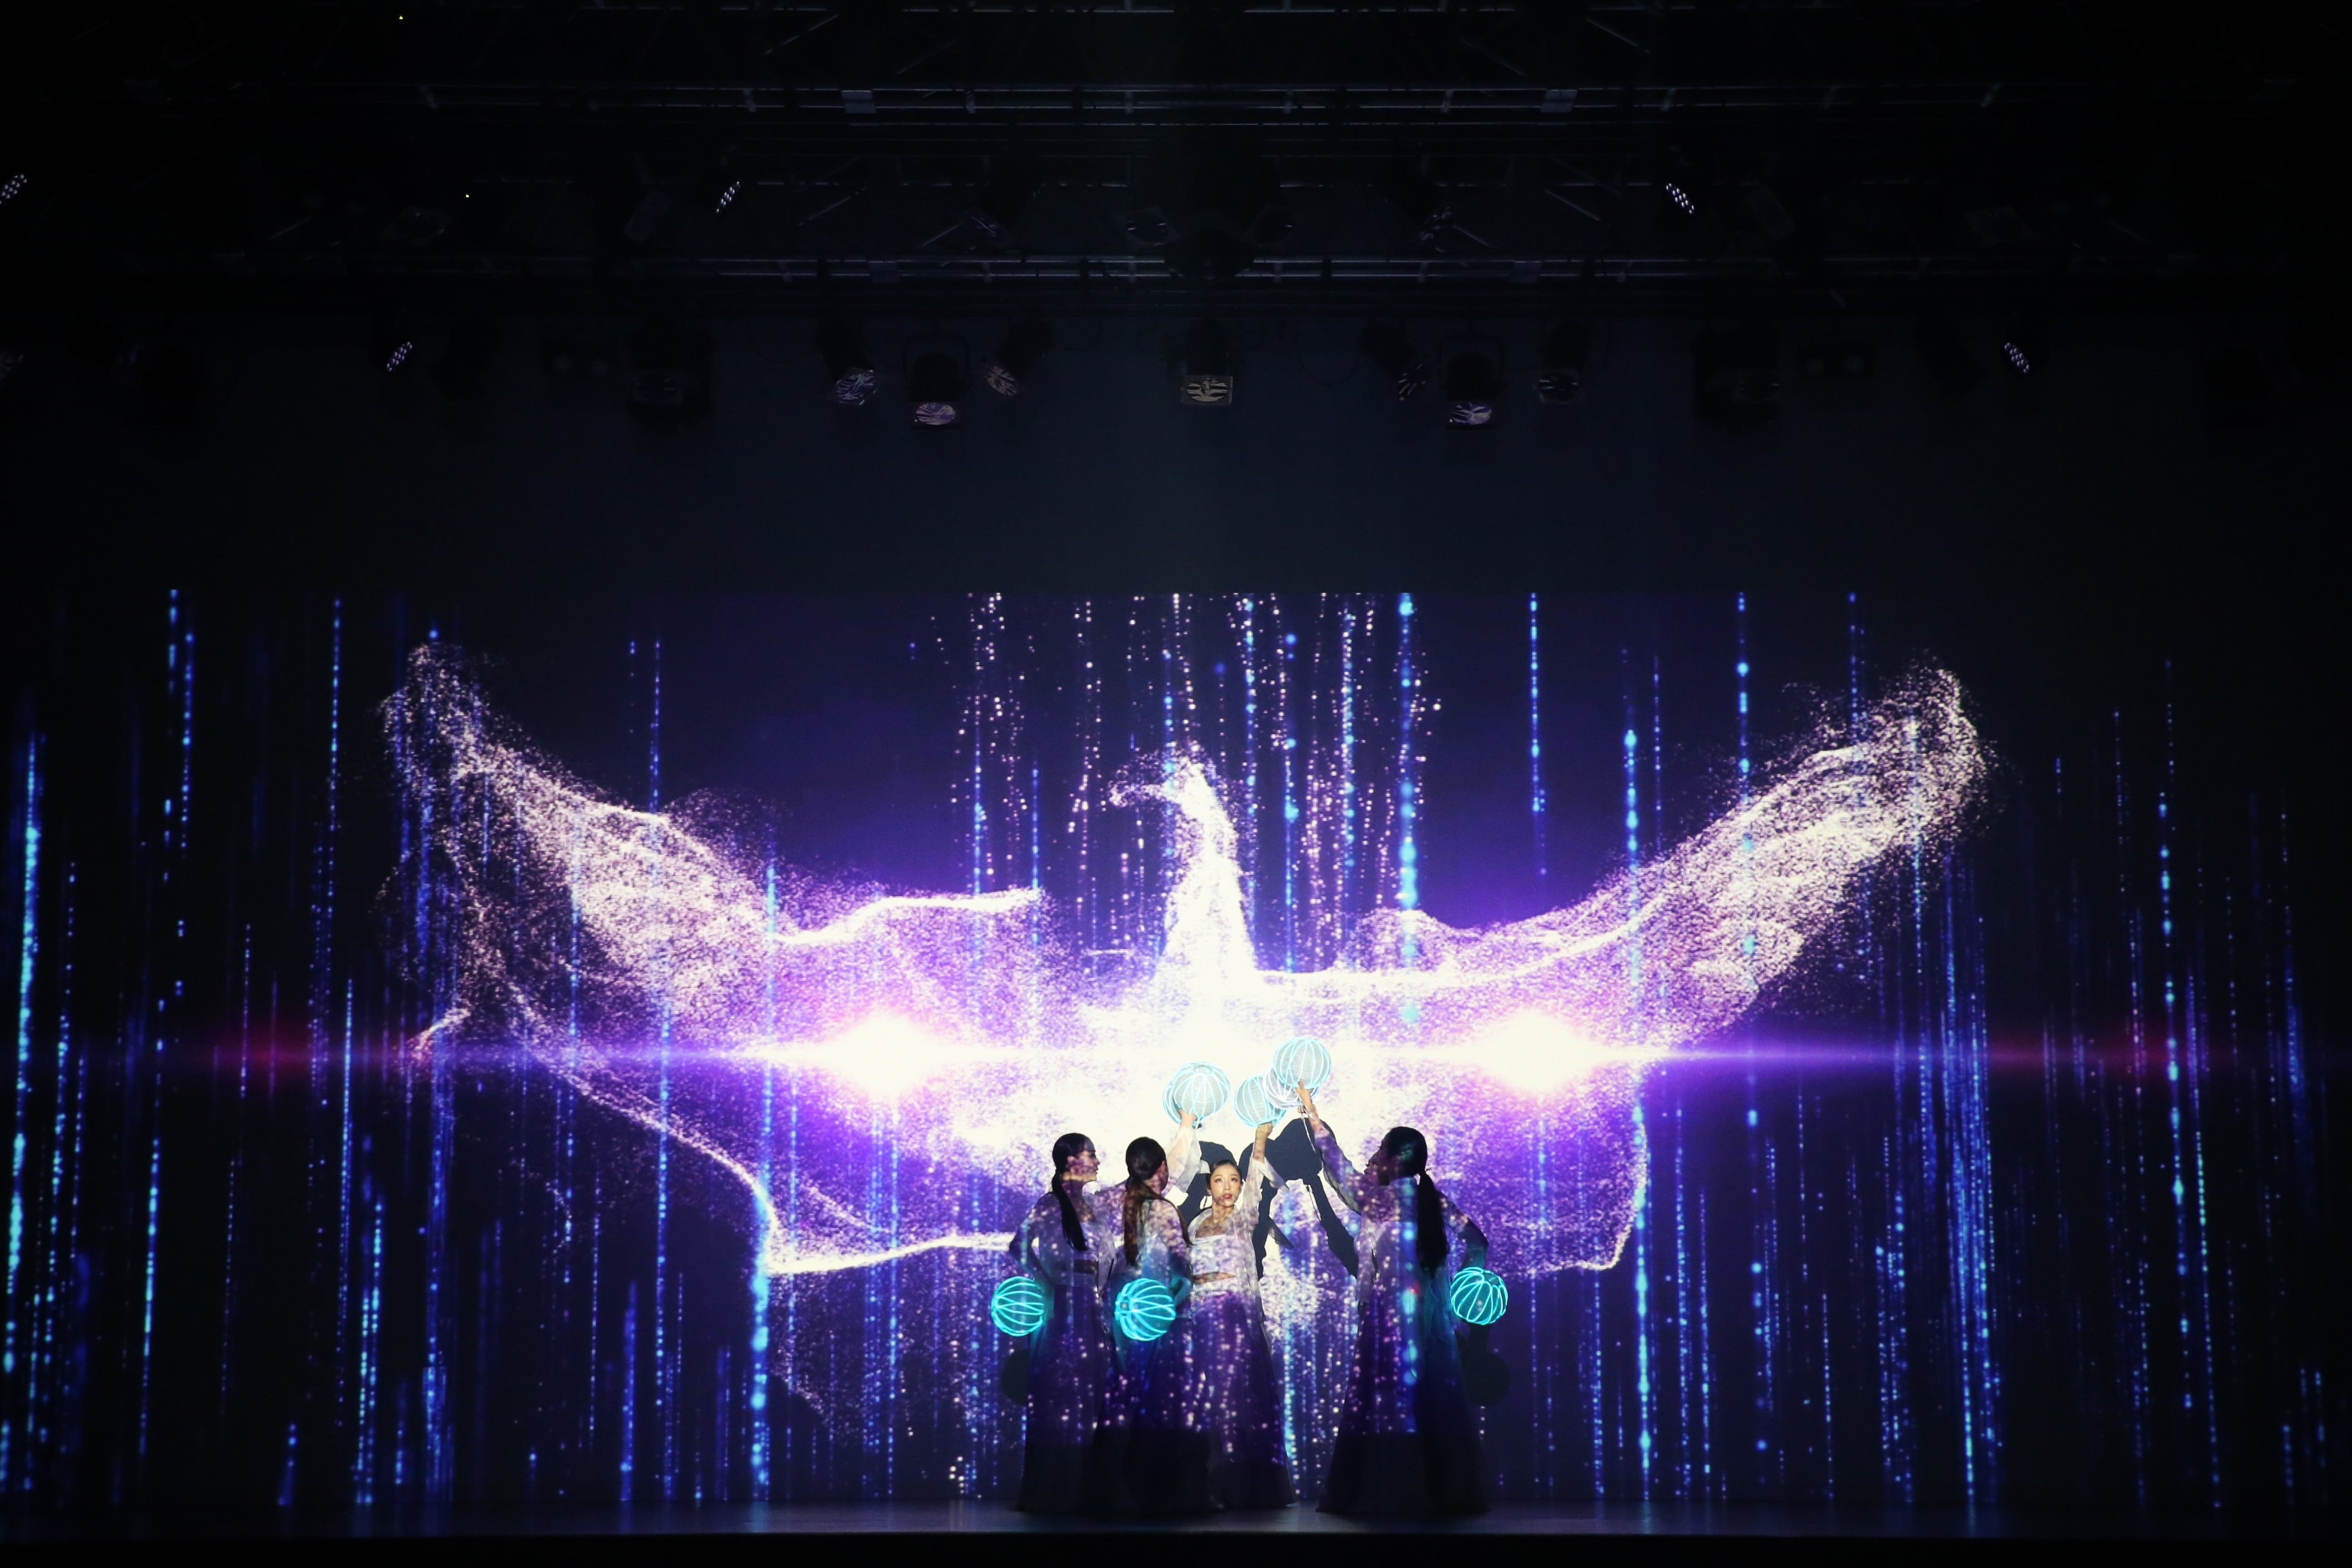 KOREA WEEK 2020: lo show “Harmony of Light”  chiude la prima edizione online